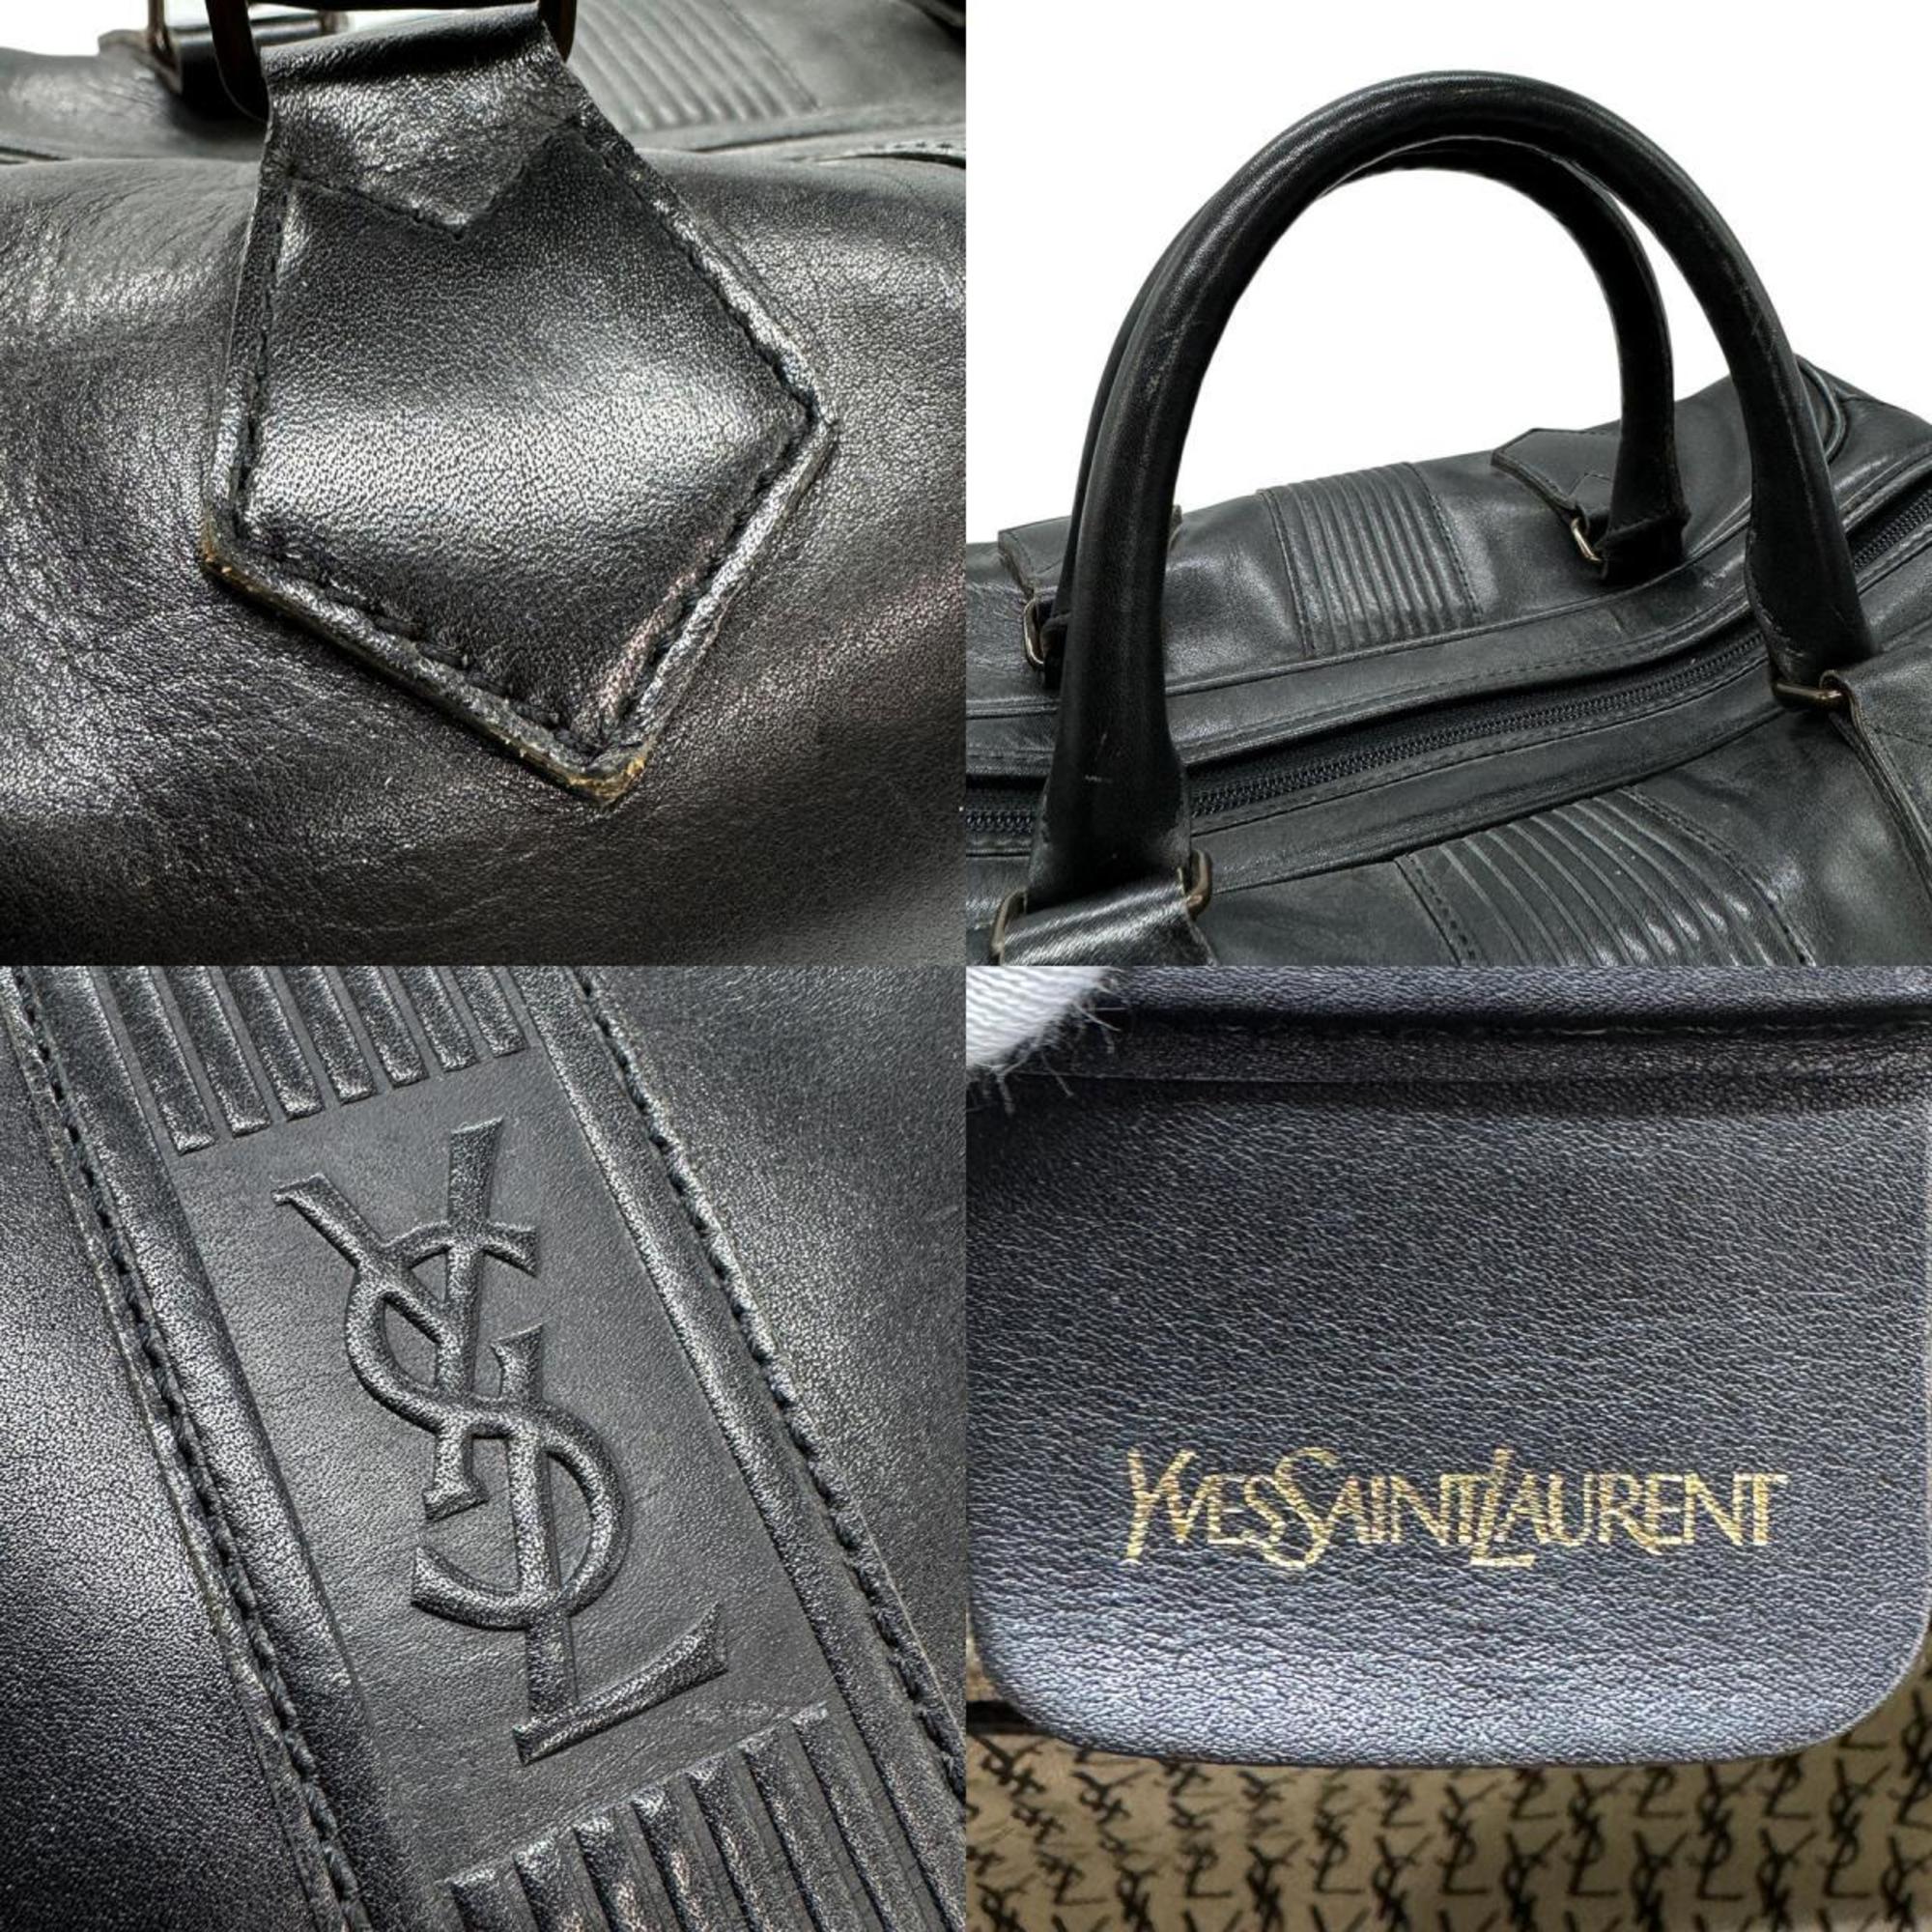 Yves Saint Laurent Boston bag, handbag, leather, black, unisex, z0657